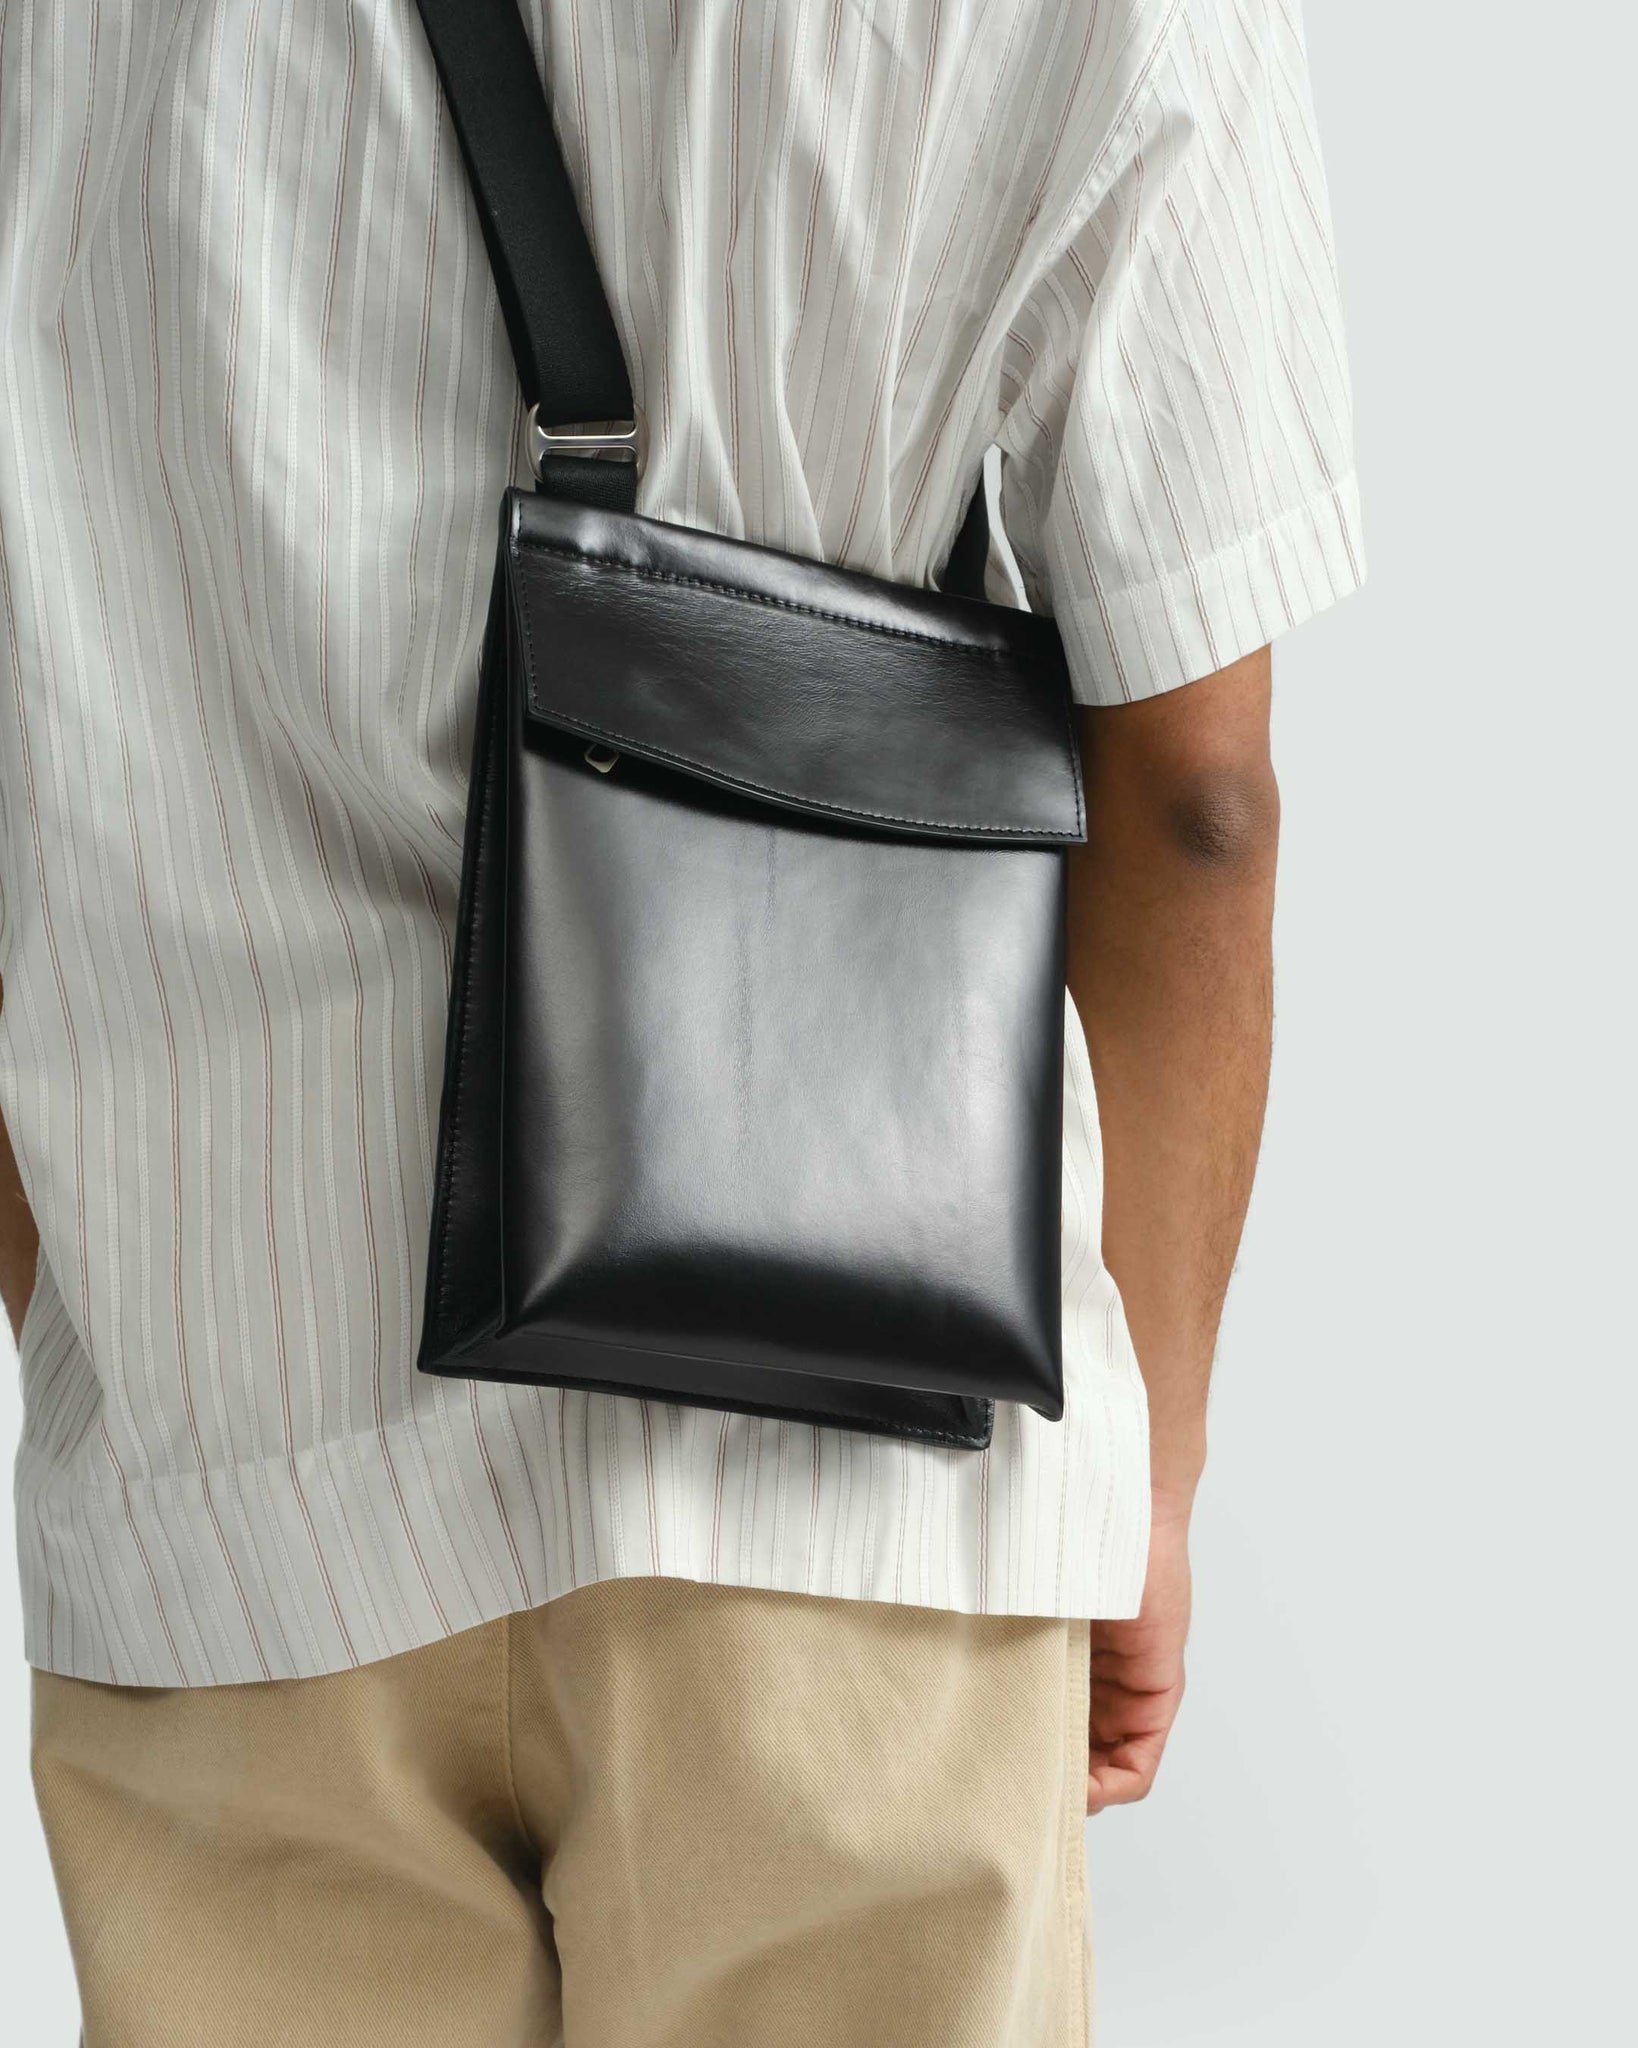 Pocket Bag - Aamon Black Leather